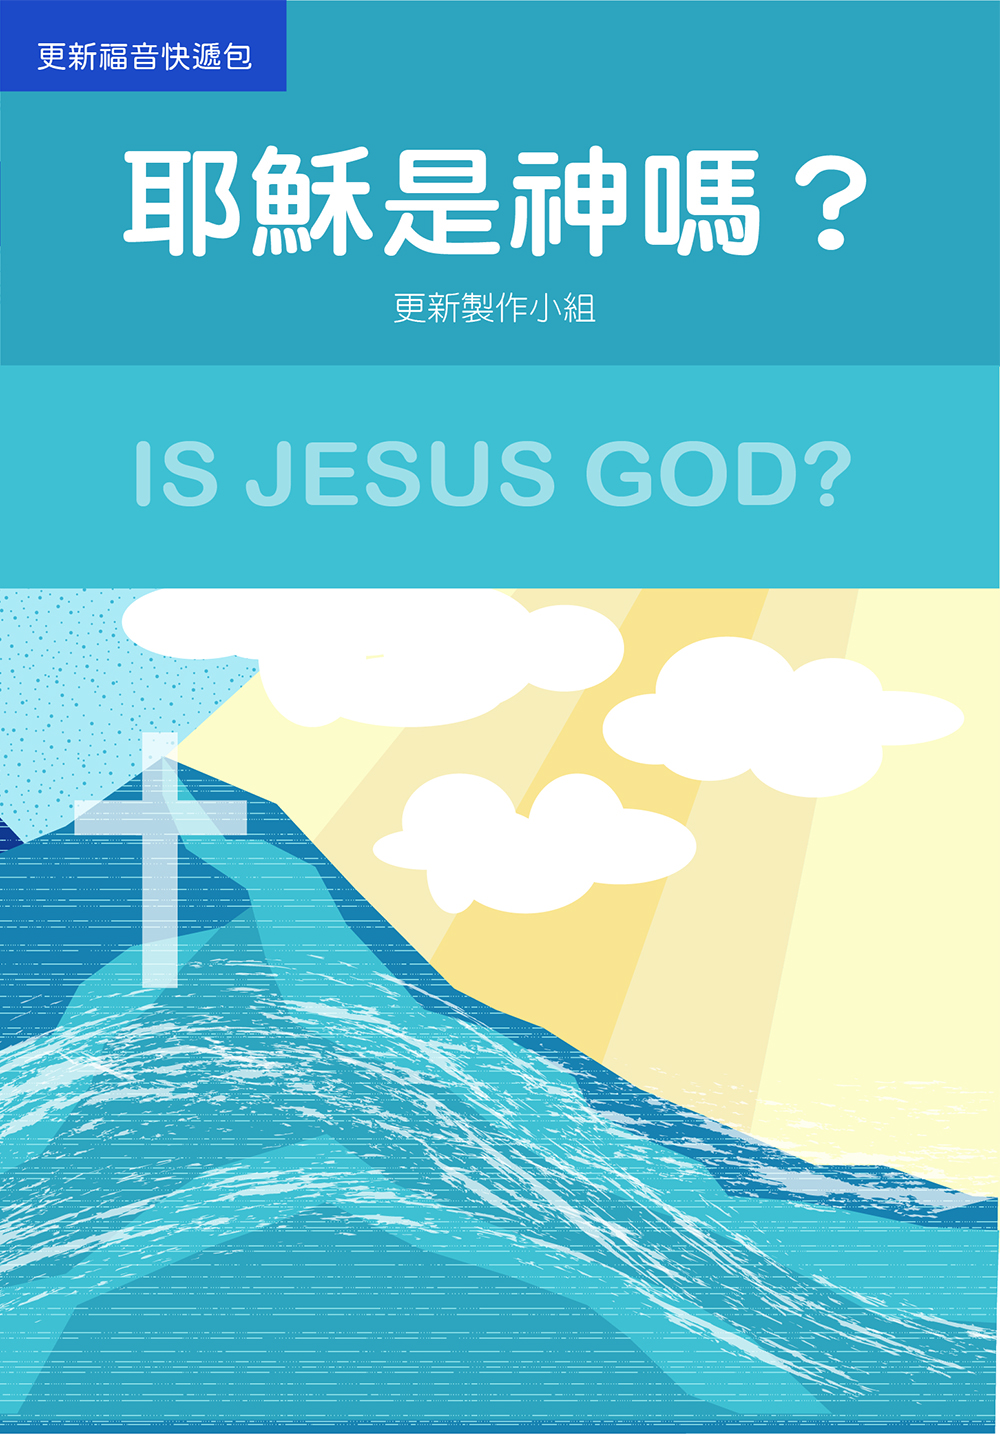 A4-03 耶穌是神嗎？(繁體) IS JESUS GOD？